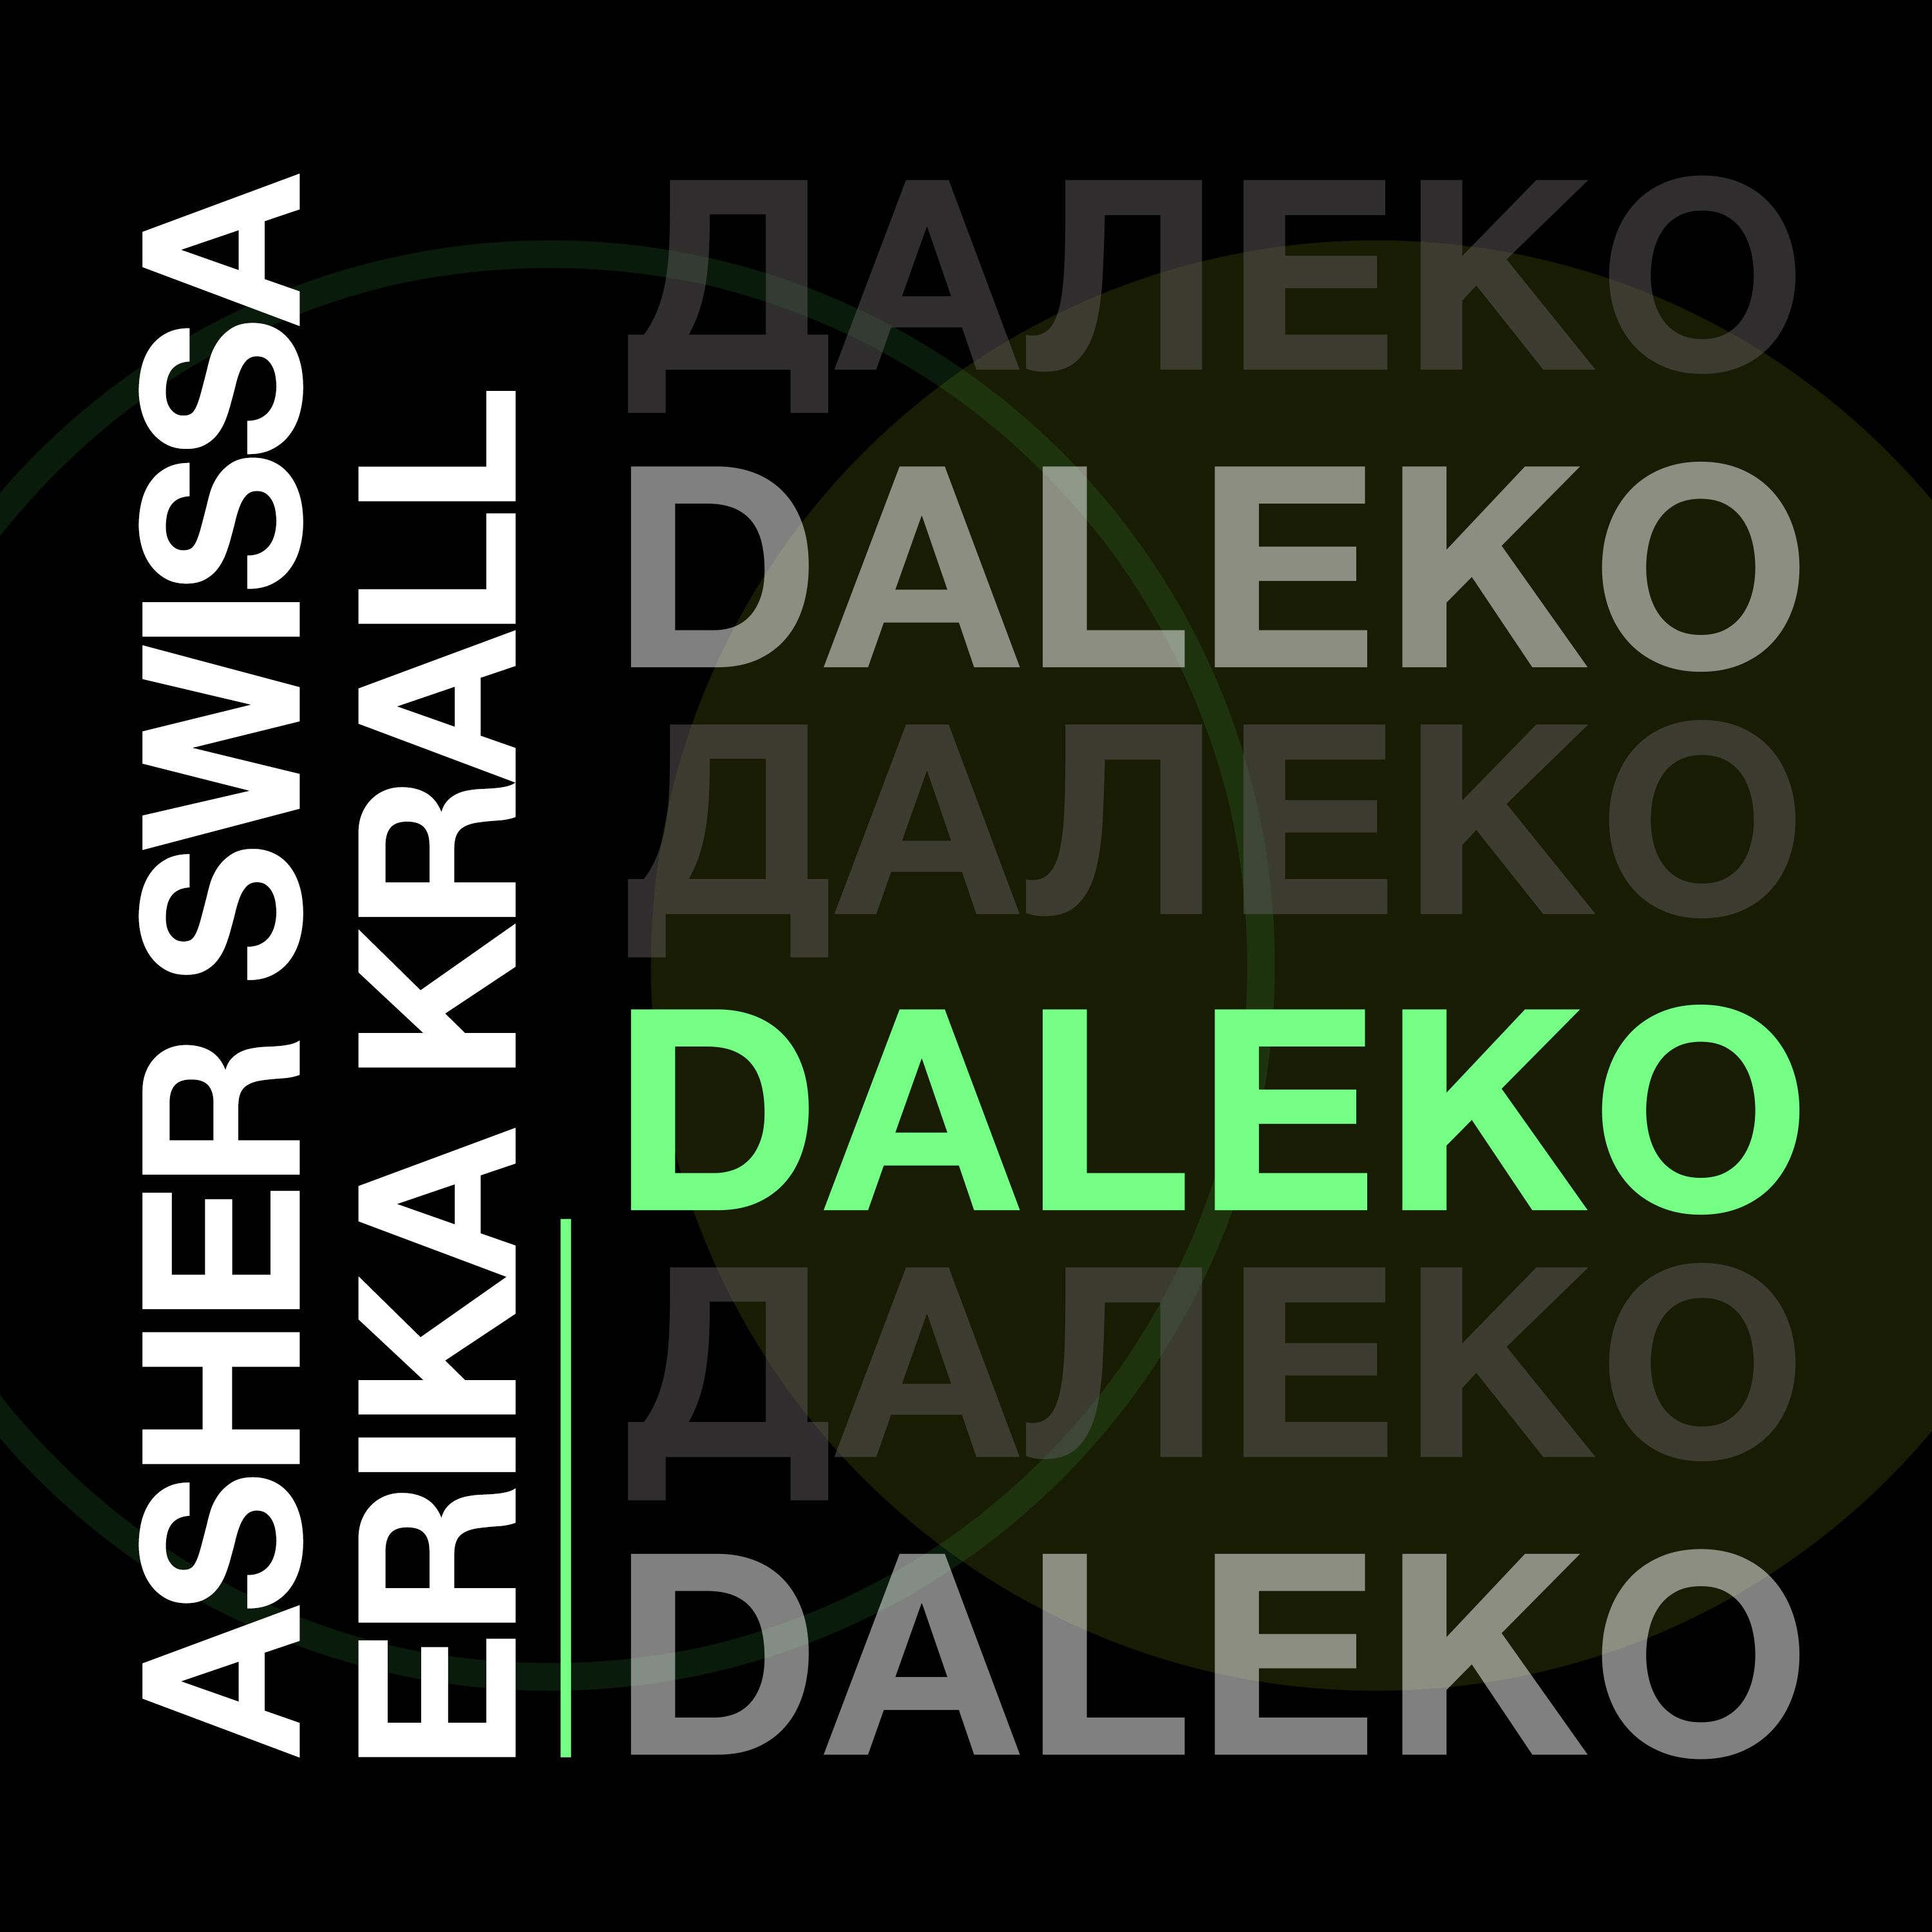 Deskargatu ASHER SWISSA & Erika Krall-DALEKO (original mix|)